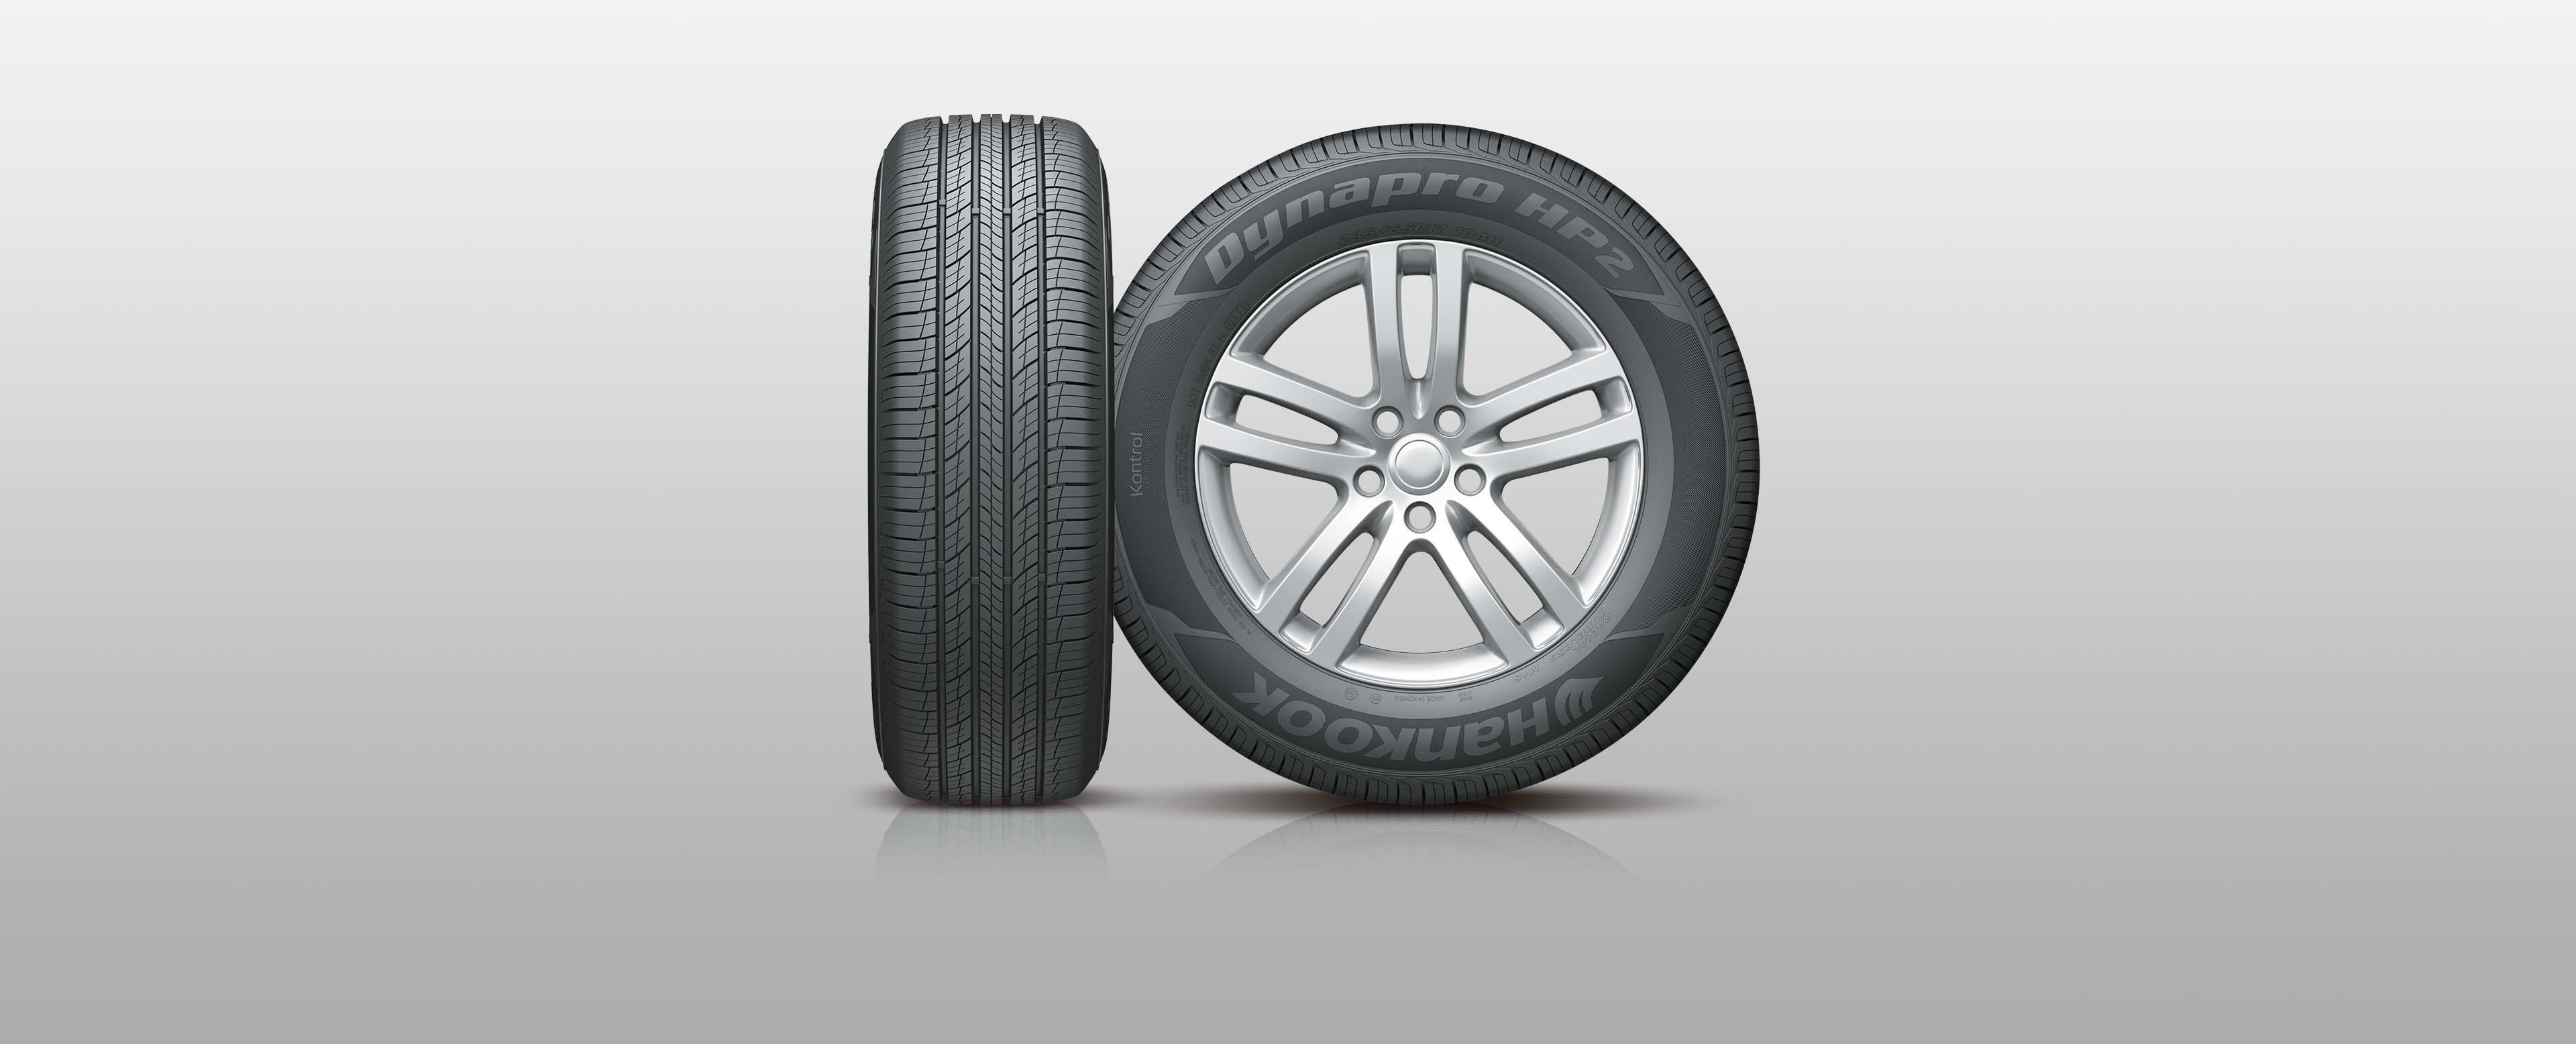 Hankook Tire & Technology -tires- Dynapro- Dynapro HP2-RA33- Cung cấp hiệu suất hoạt động trên đường khô và đường ướt tuyệt vời